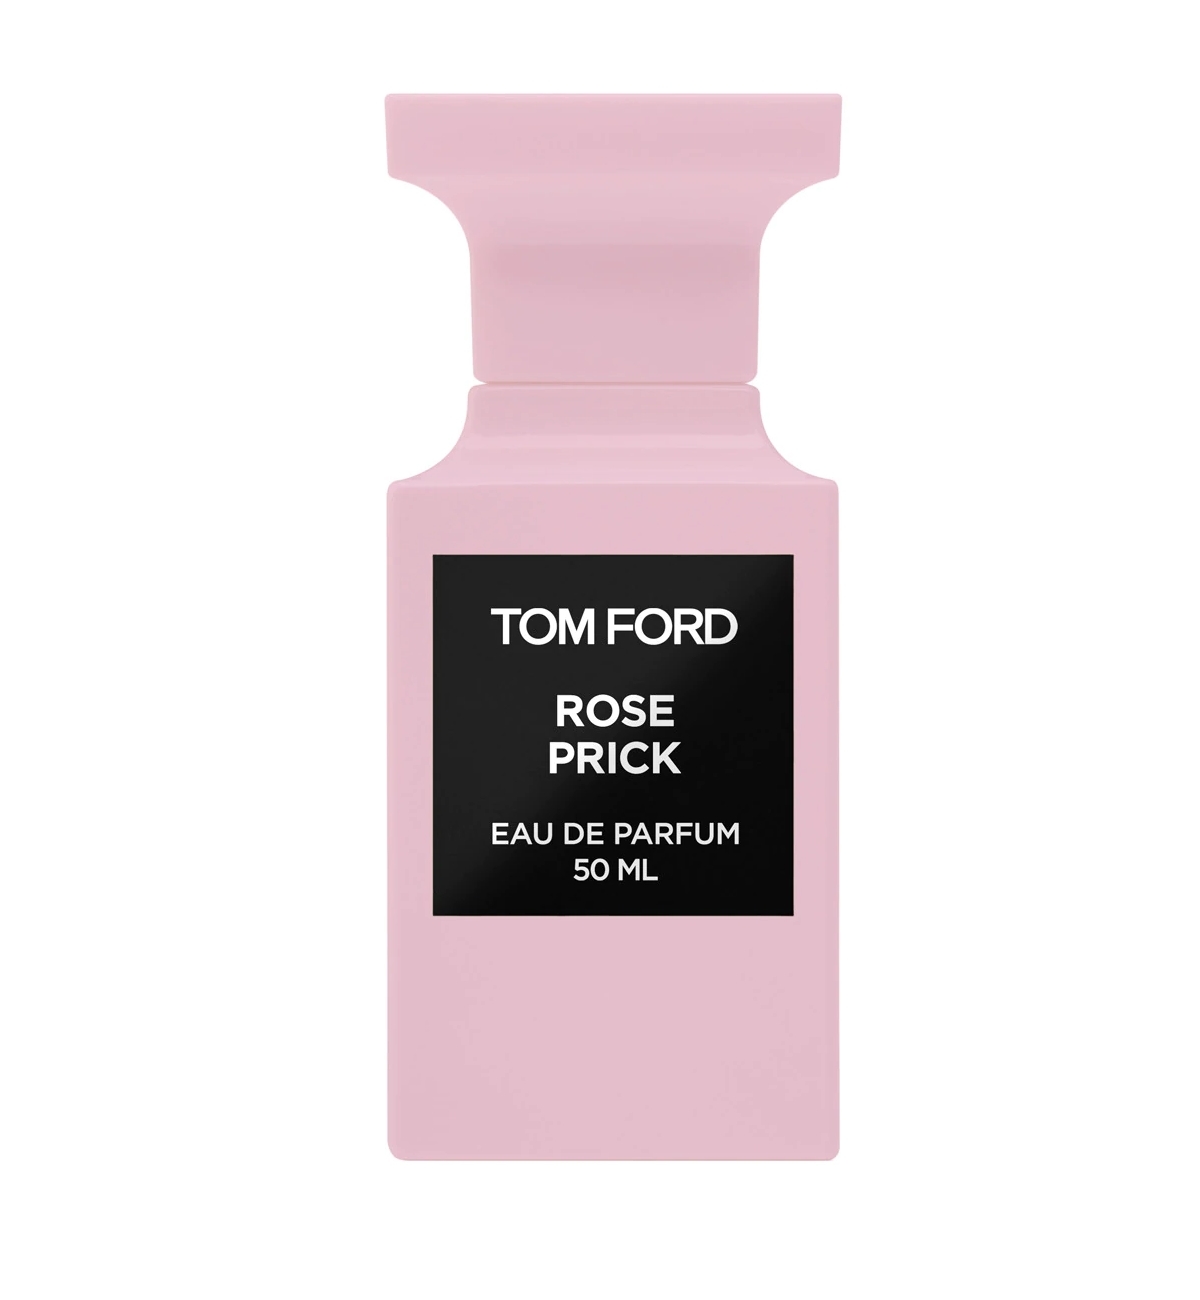 Rose Prick Eau de Parfum de Tom Ford.